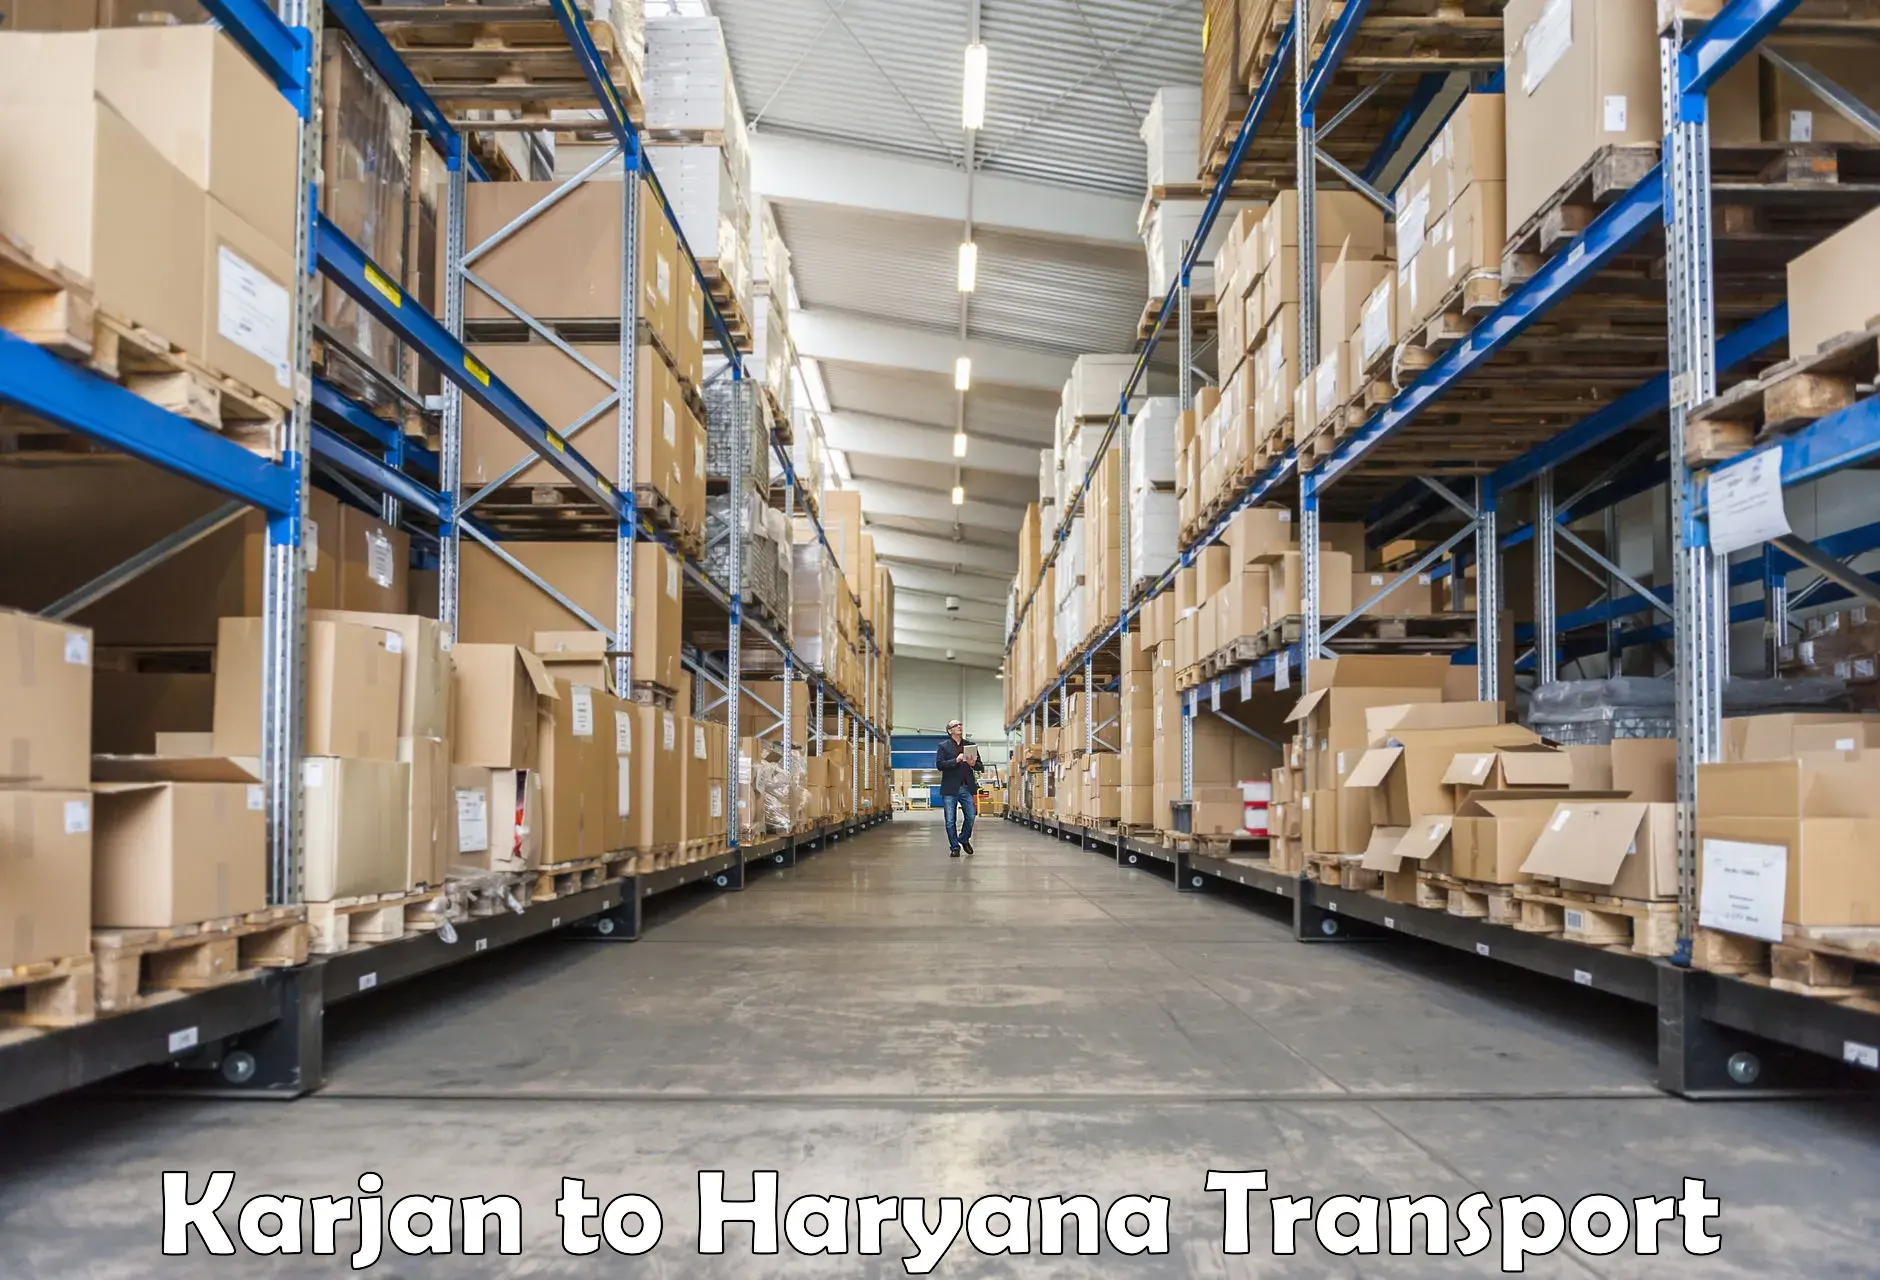 Door to door transport services Karjan to Bilaspur Haryana